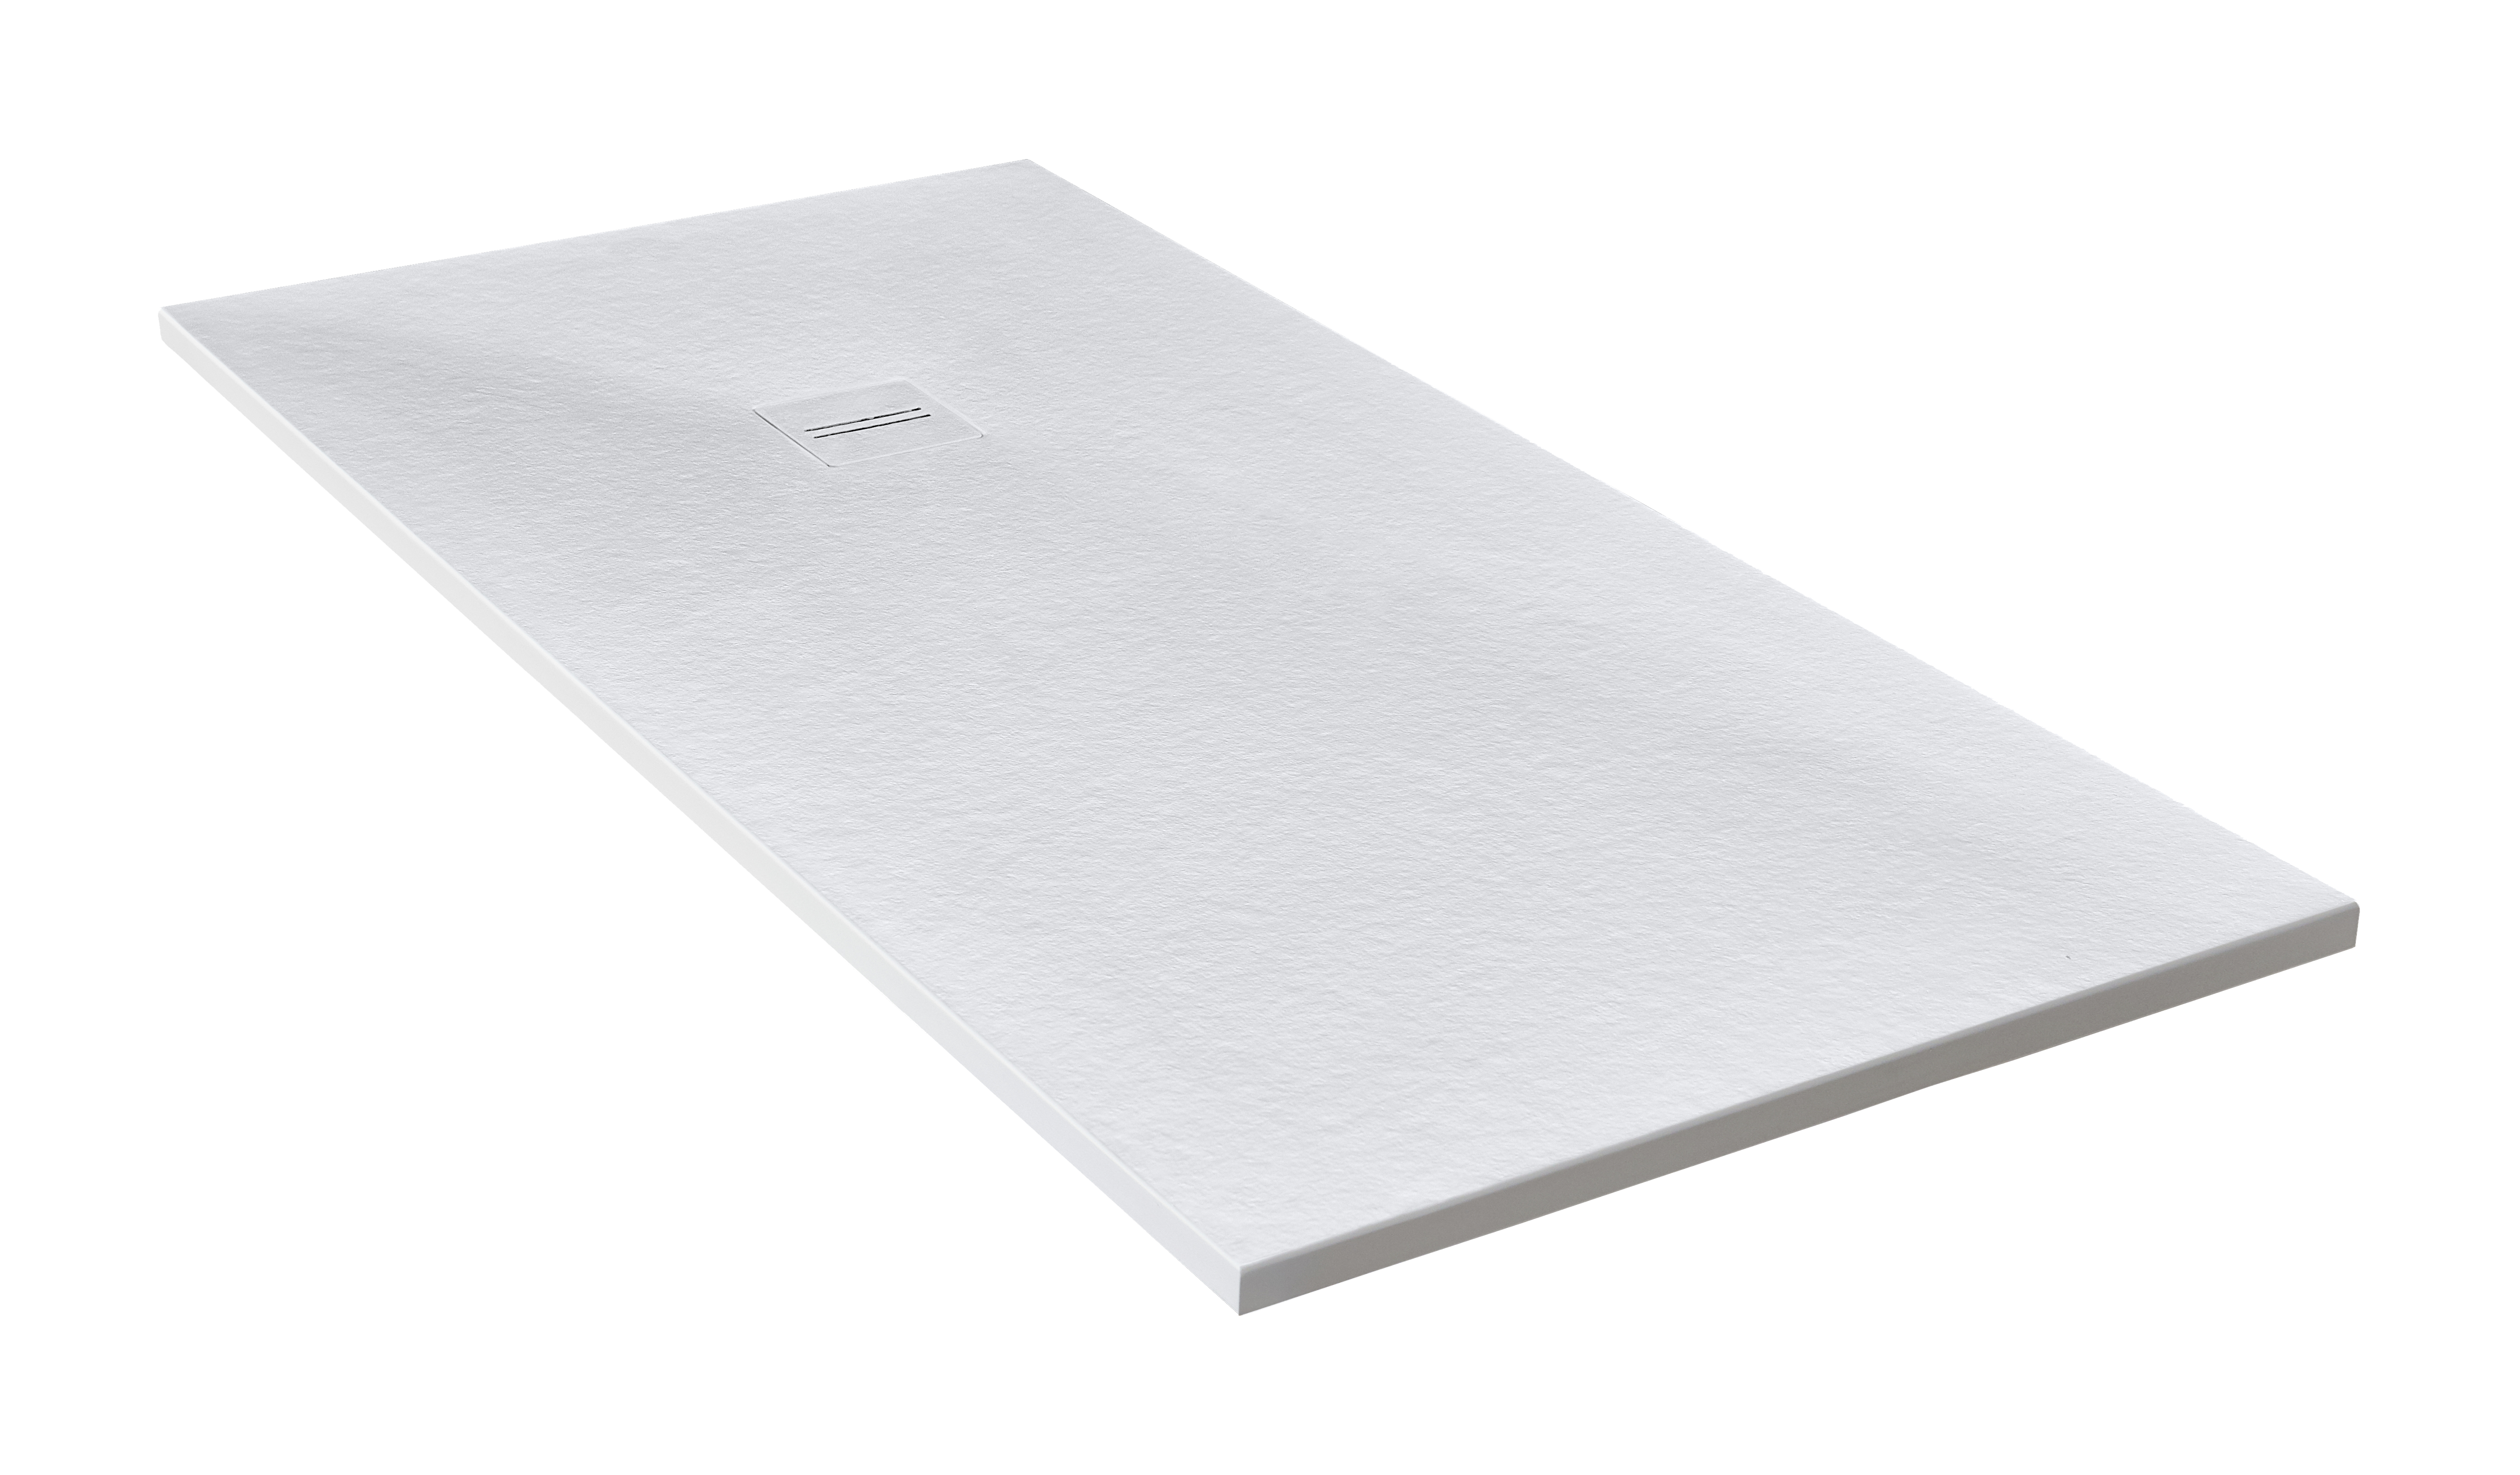 Plato de ducha cosmos 180x90 cm blanco